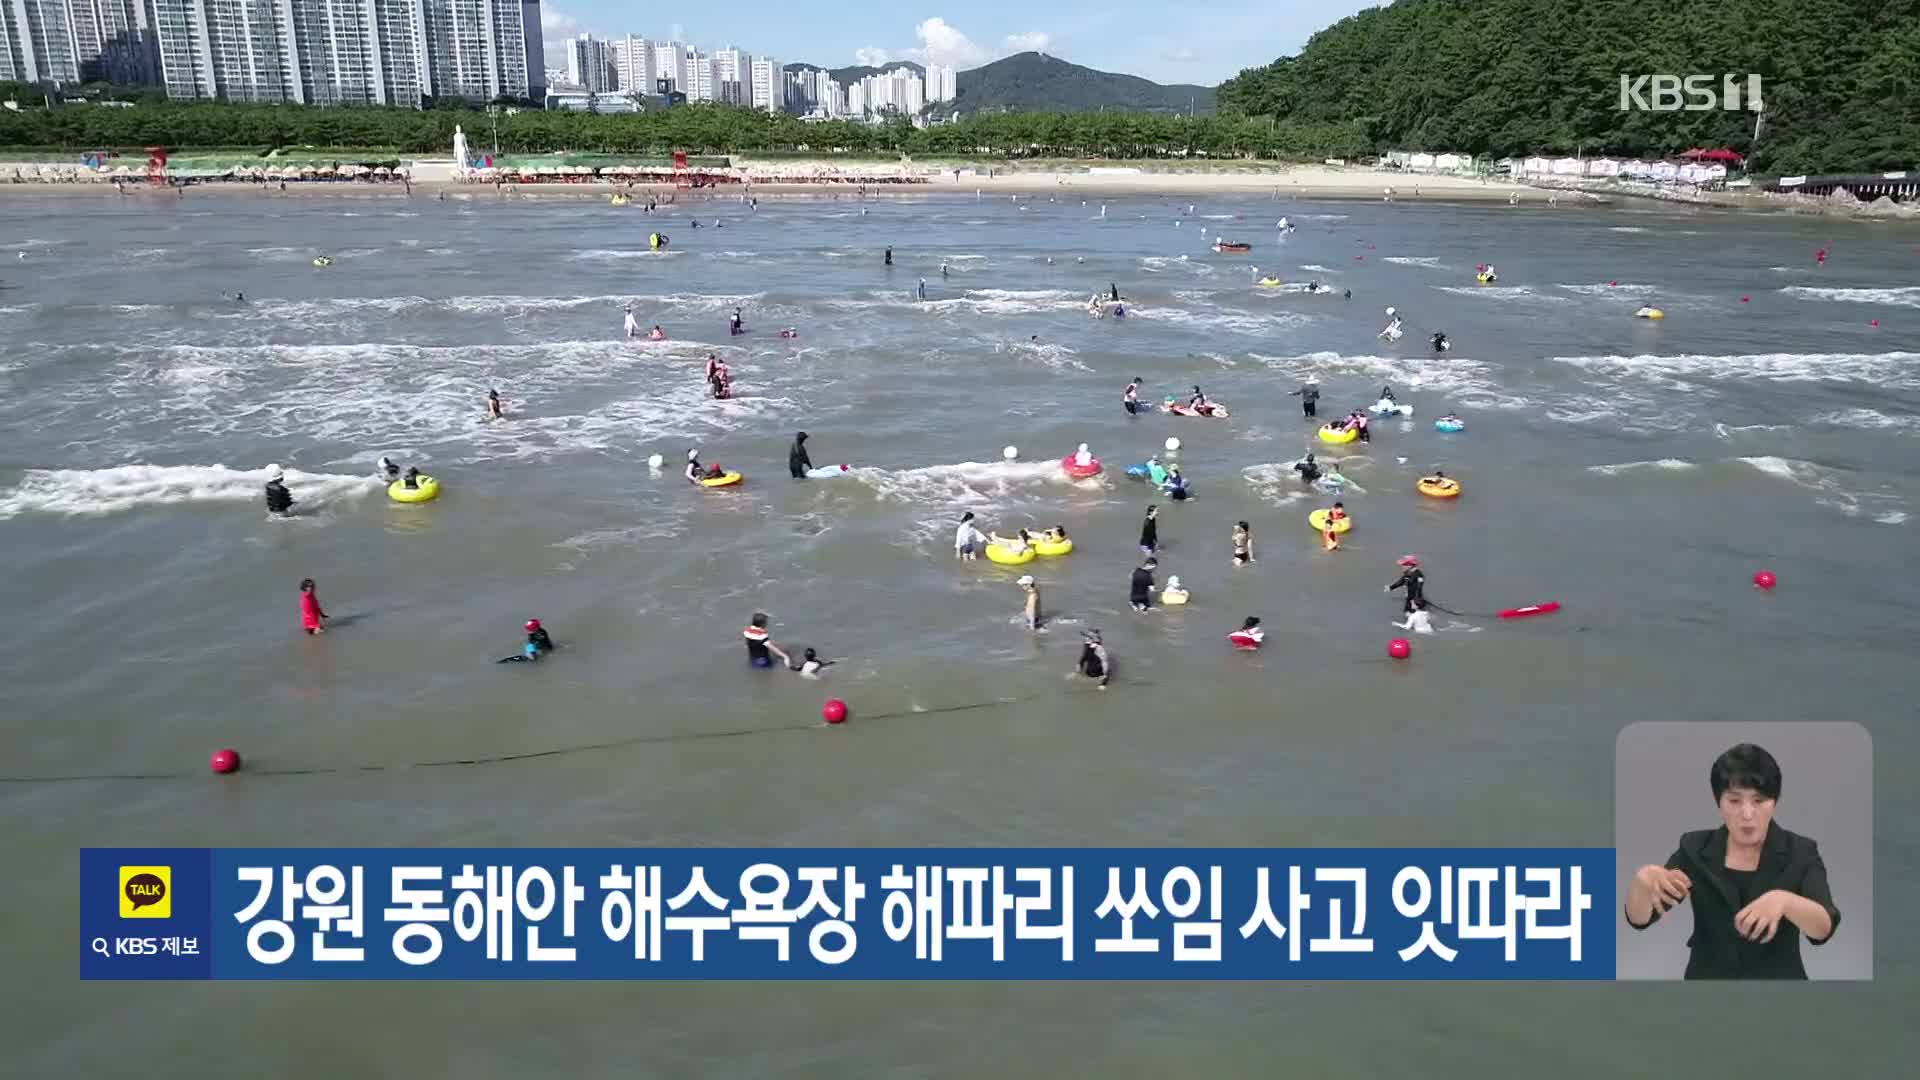 [기후는 말한다] 강원 동해안 해수욕장 해파리 쏘임 사고 잇따라